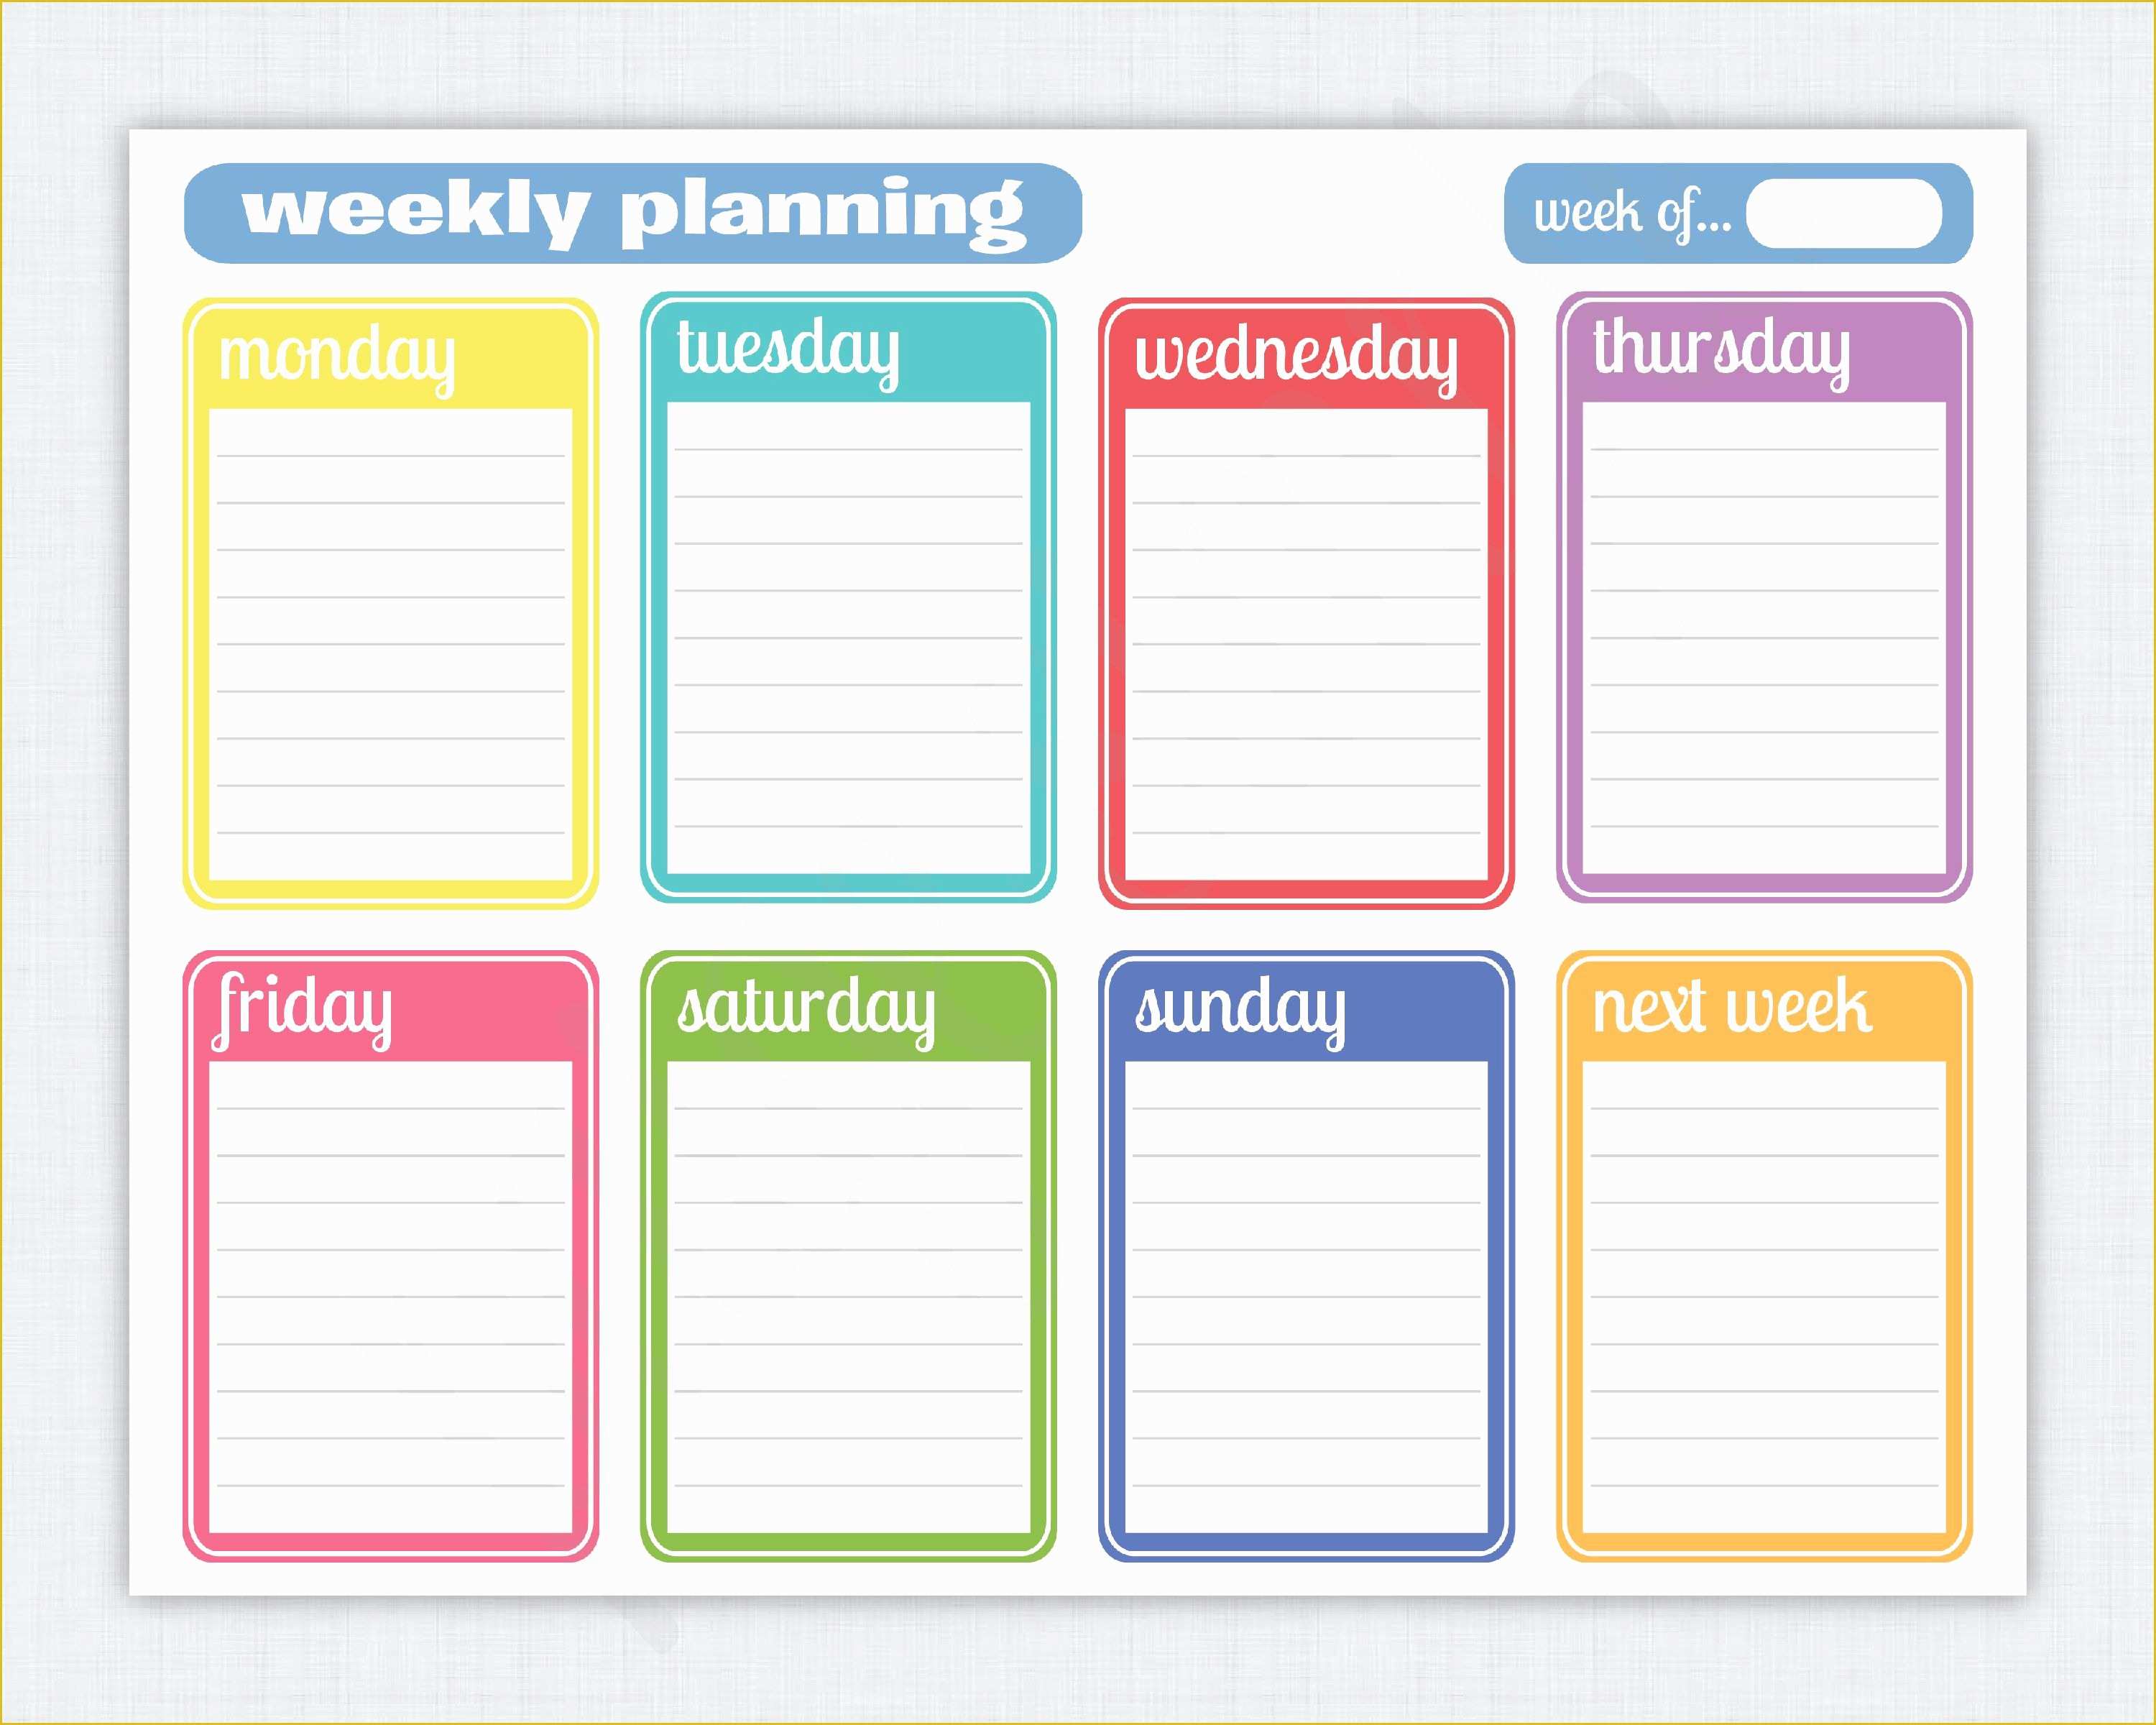 Free Weekly Planner Template Word Of Simple Weekly Planner